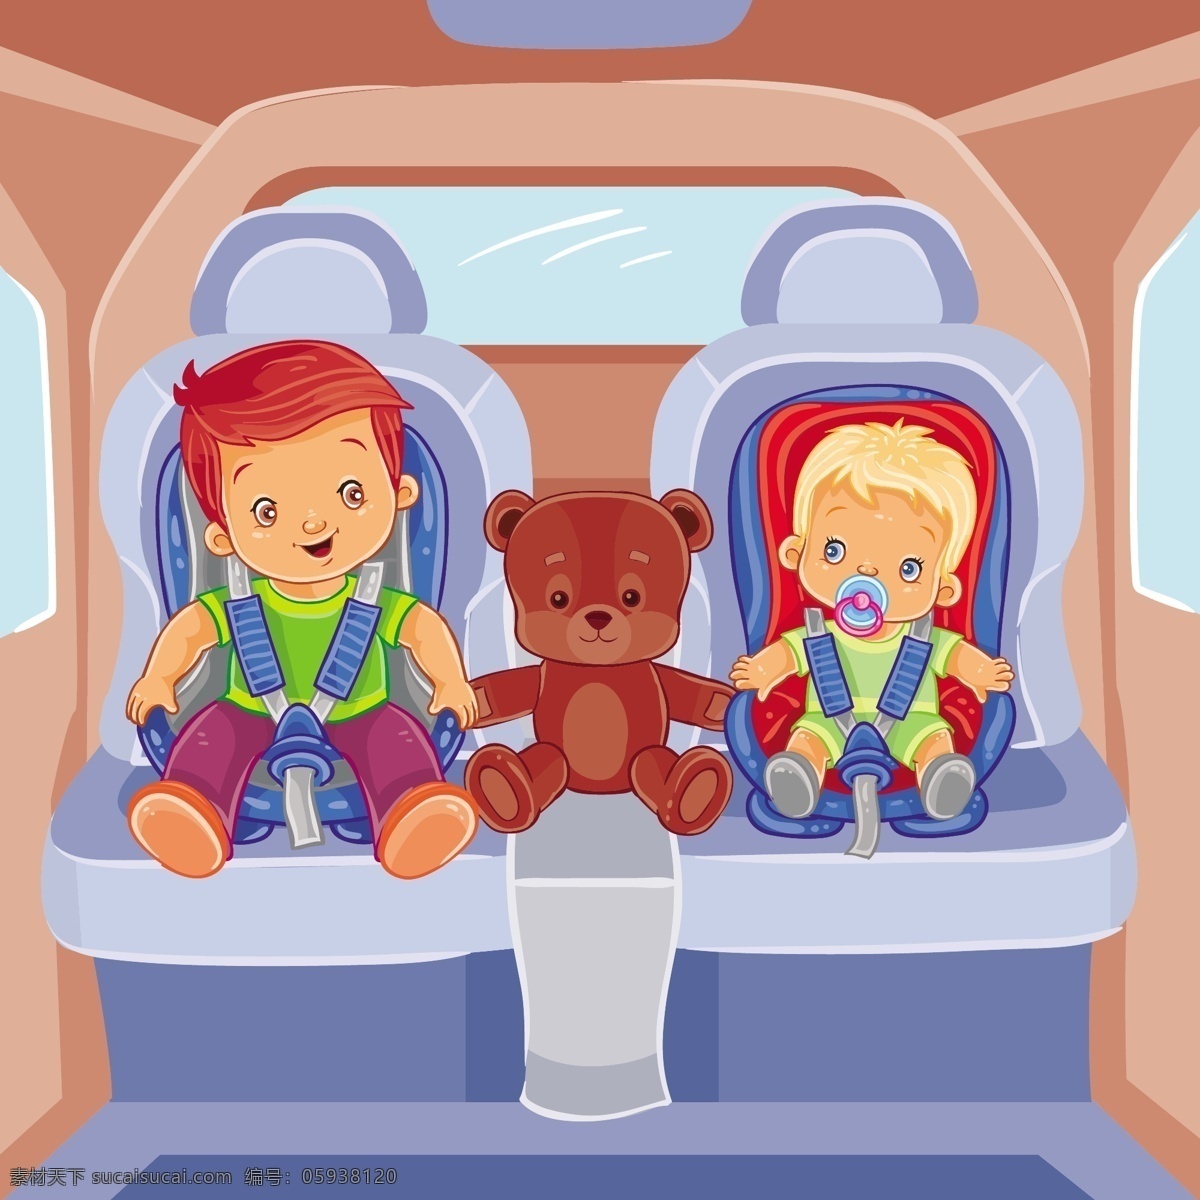 两个 小 男孩 坐在 儿童 汽车 座椅 上 婴儿 书籍 模板 人物 卡通 可爱 微笑 快乐 孩子 熊 安全 椅子 徽章 有趣 小男孩 卡通人物